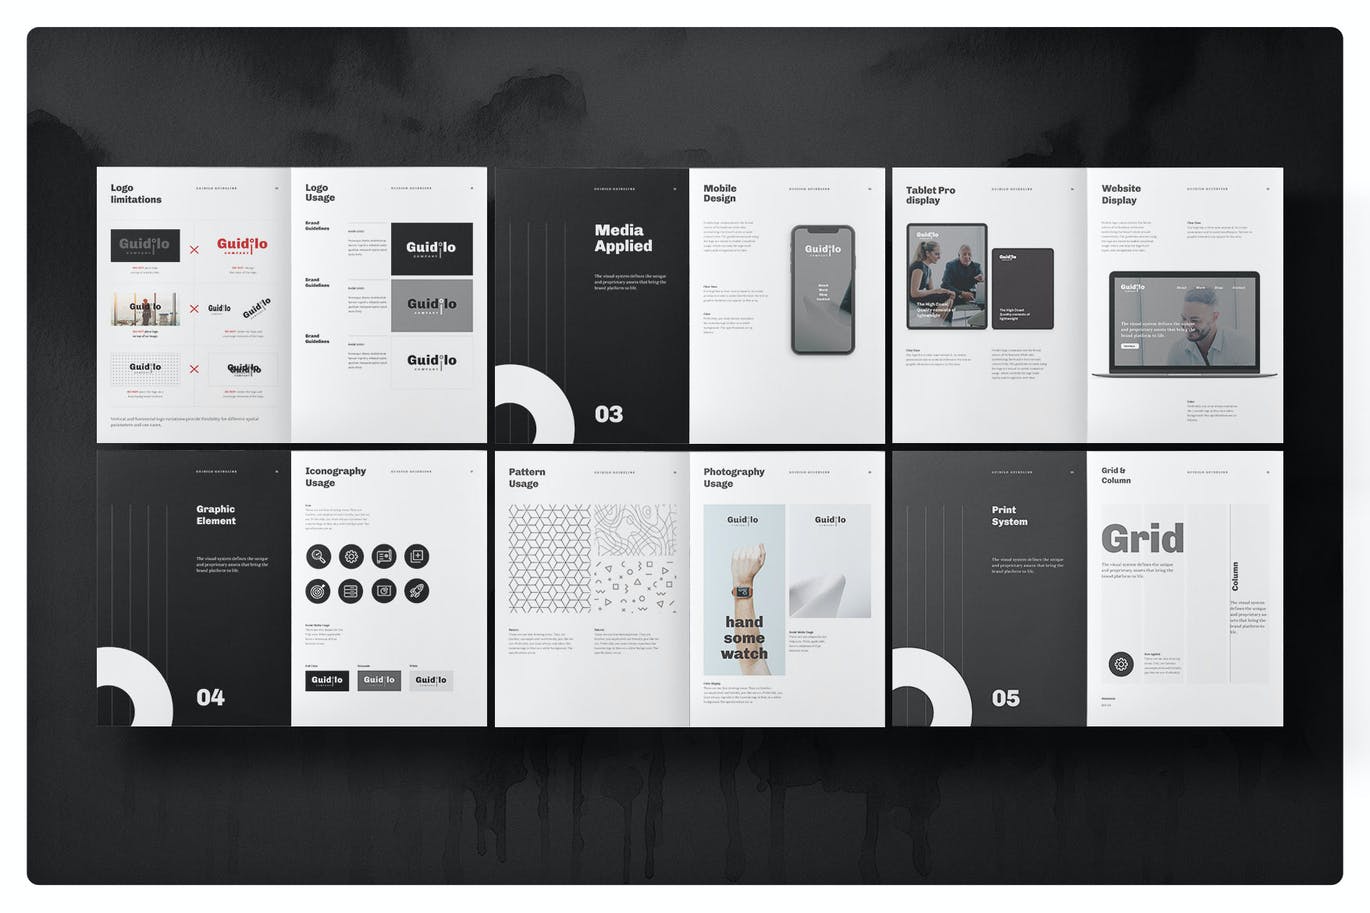 黑白商务稳重风格画册宣传册VI手册设计模板